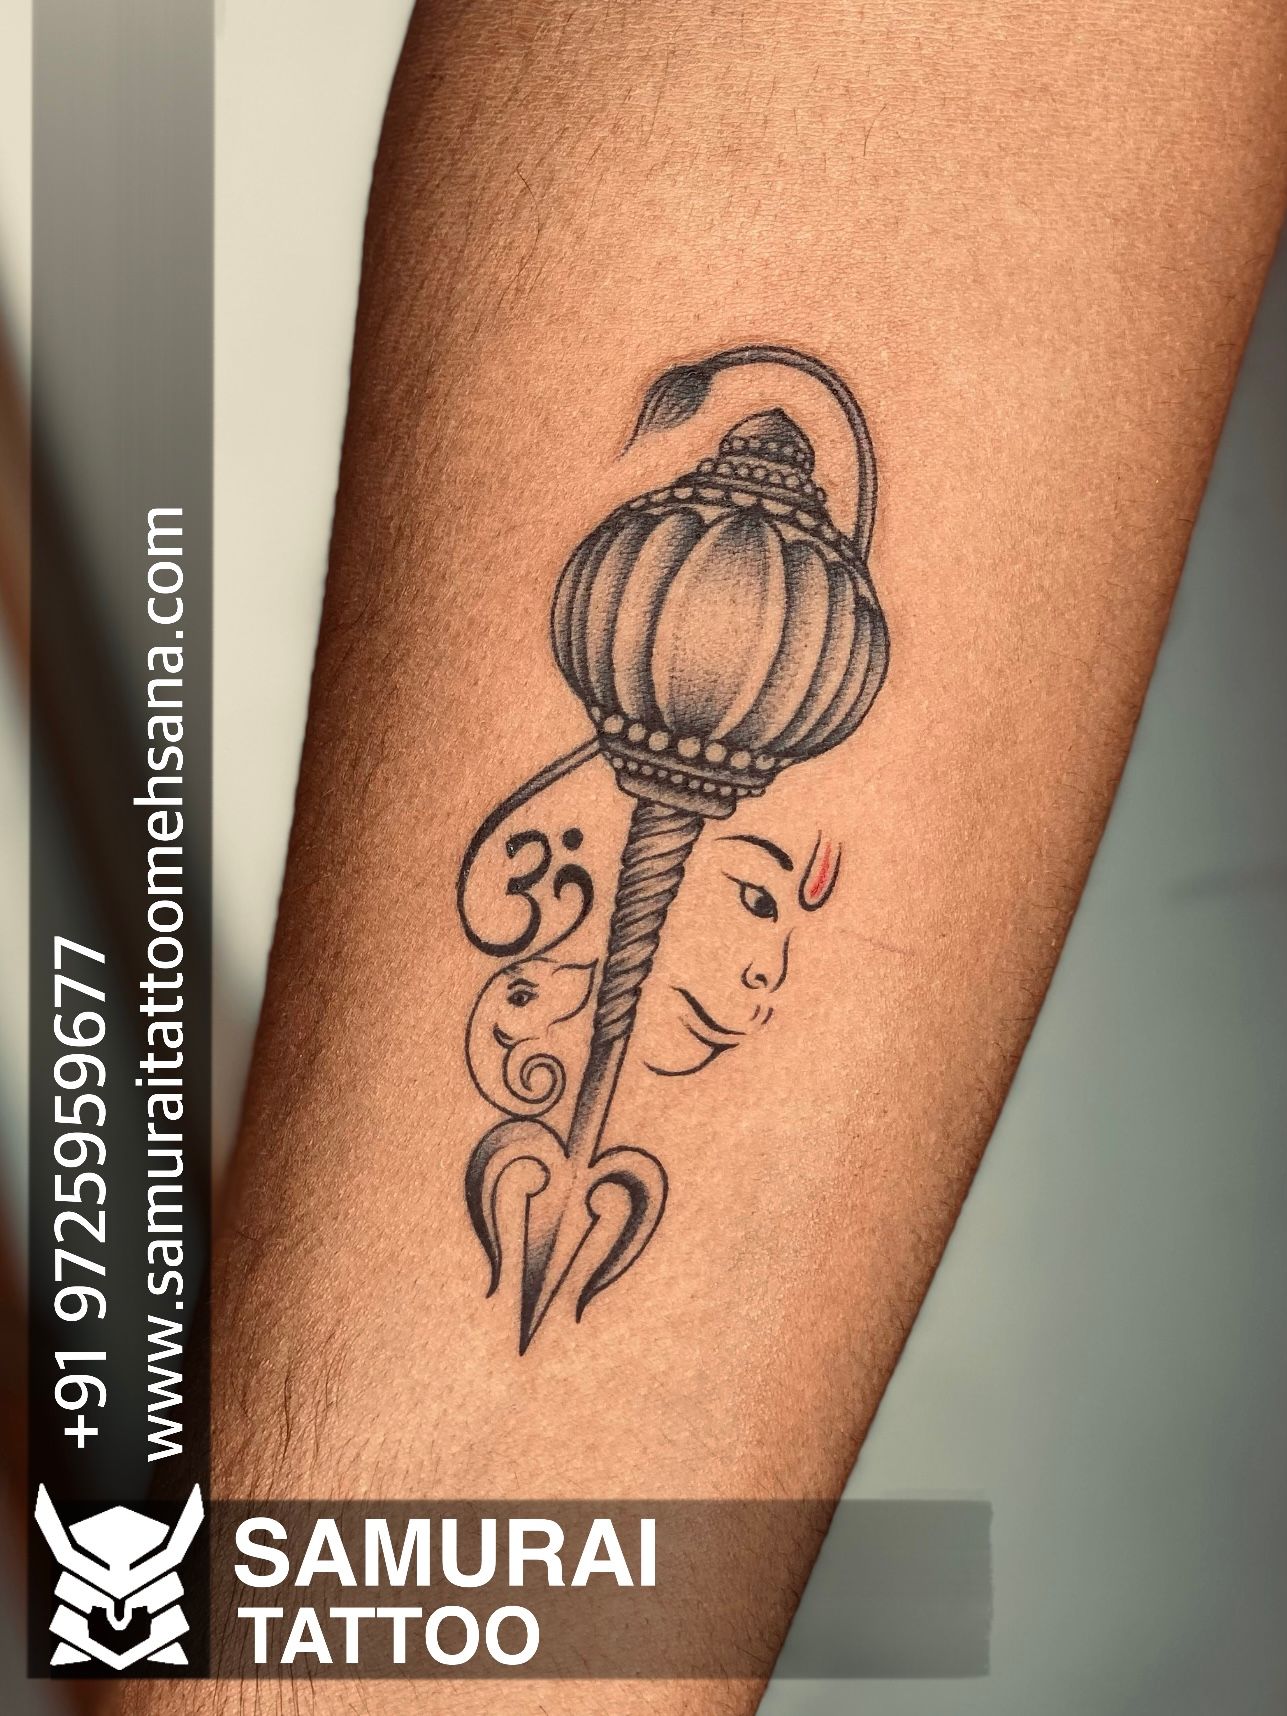 Hanuman dada tattoo |Bajrangbali tattoo |Hanumanji tattoo | Tattoos, Hanuman  tattoo, Bajrangbali